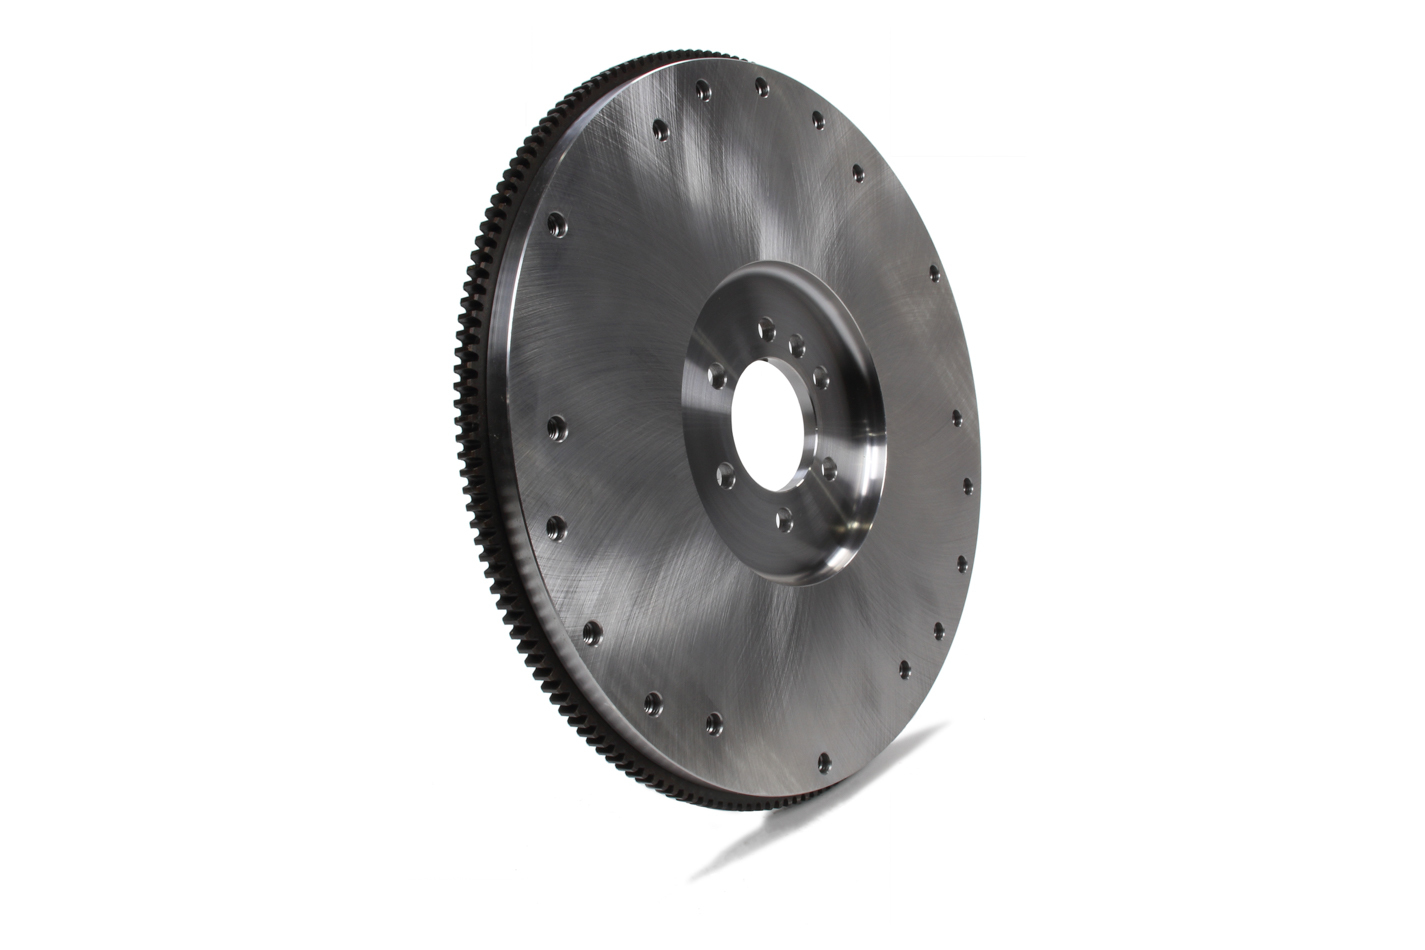 Ram Clutch 1501LW - Flywheel, 168 Tooth, 25 lb, SFI 1.1, Steel, Natural, Internal Balance, Chevy V8, Each